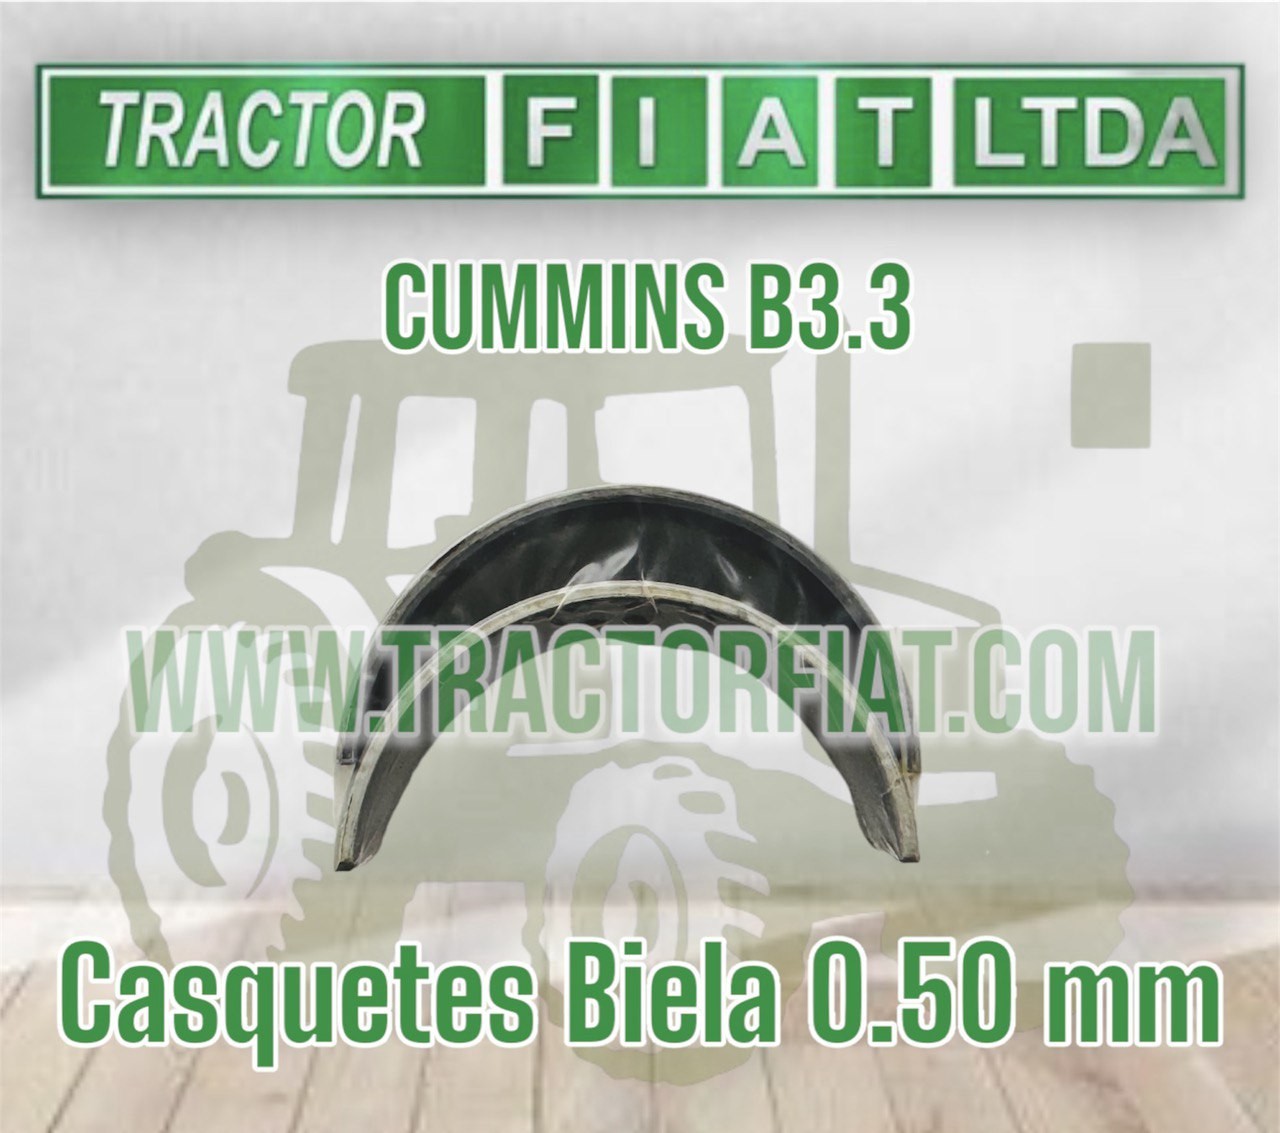 CASQUETES BIELA 0.50 MM - MOTOR CUMMINS QSB3.3